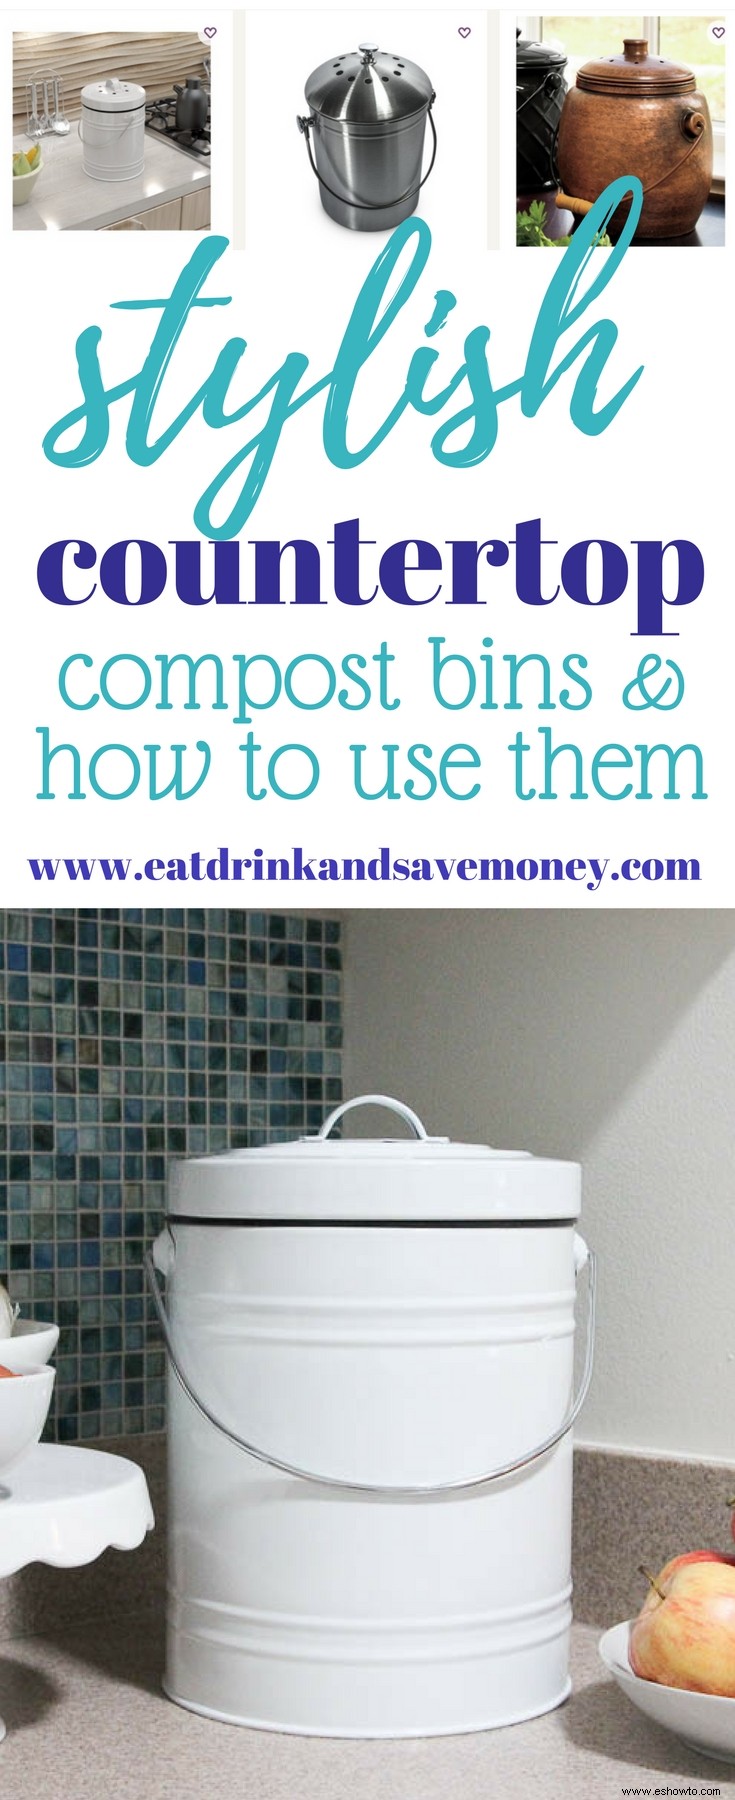 Una guía fácil para el compostaje de mostrador con estilo 